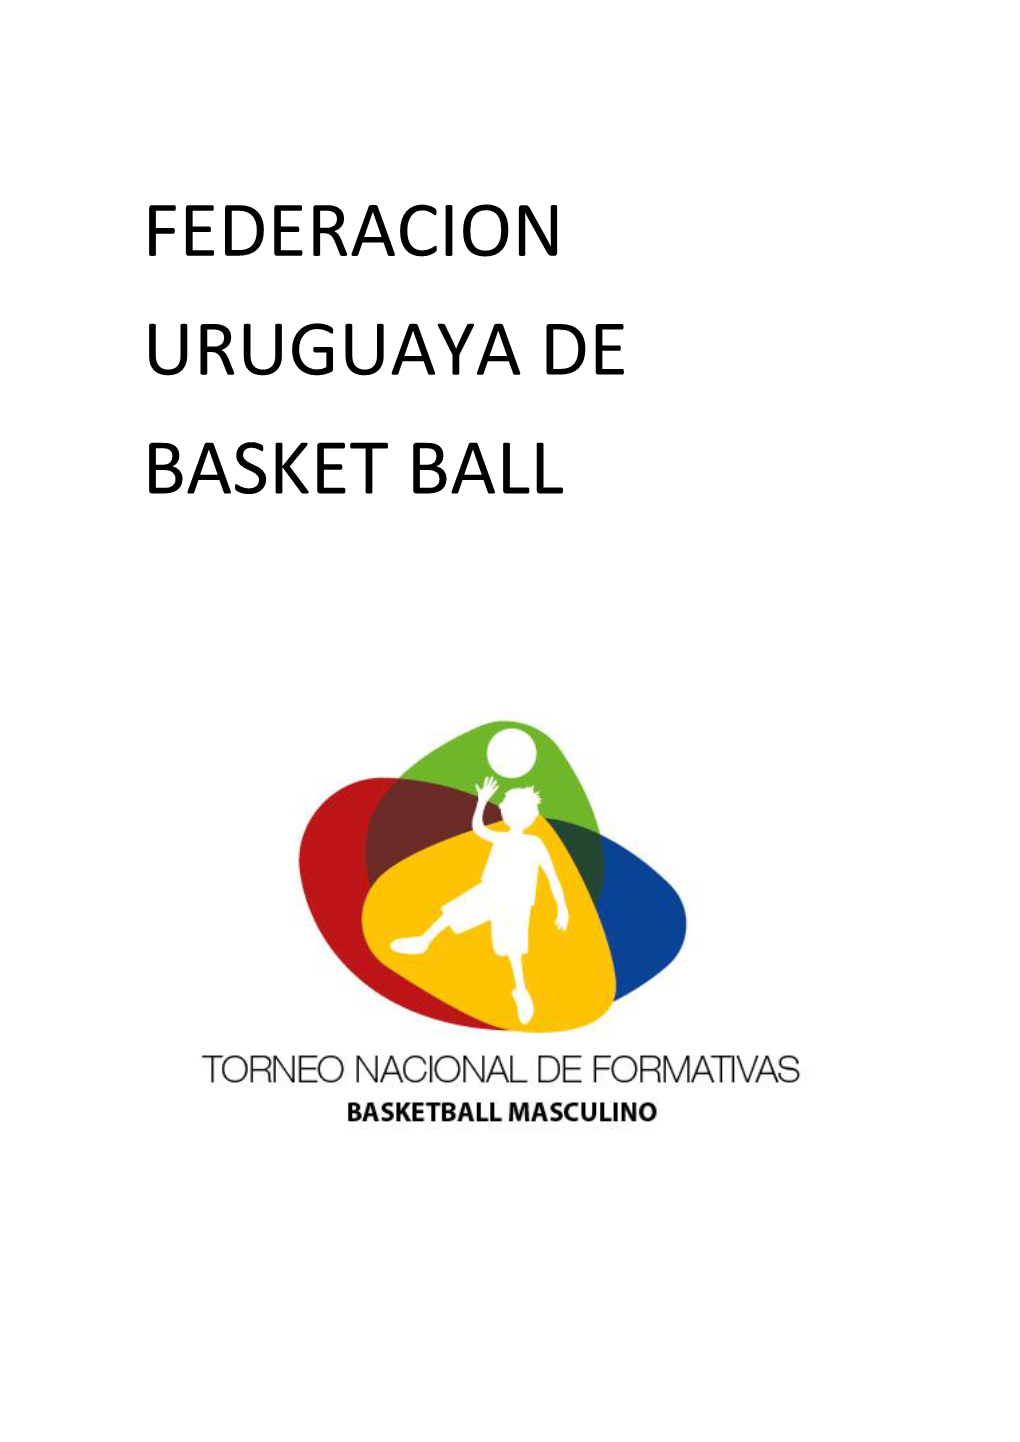 FEDERACION URUGUAYA DE BASKET BALL Torneo Divisiones Formativas 2015